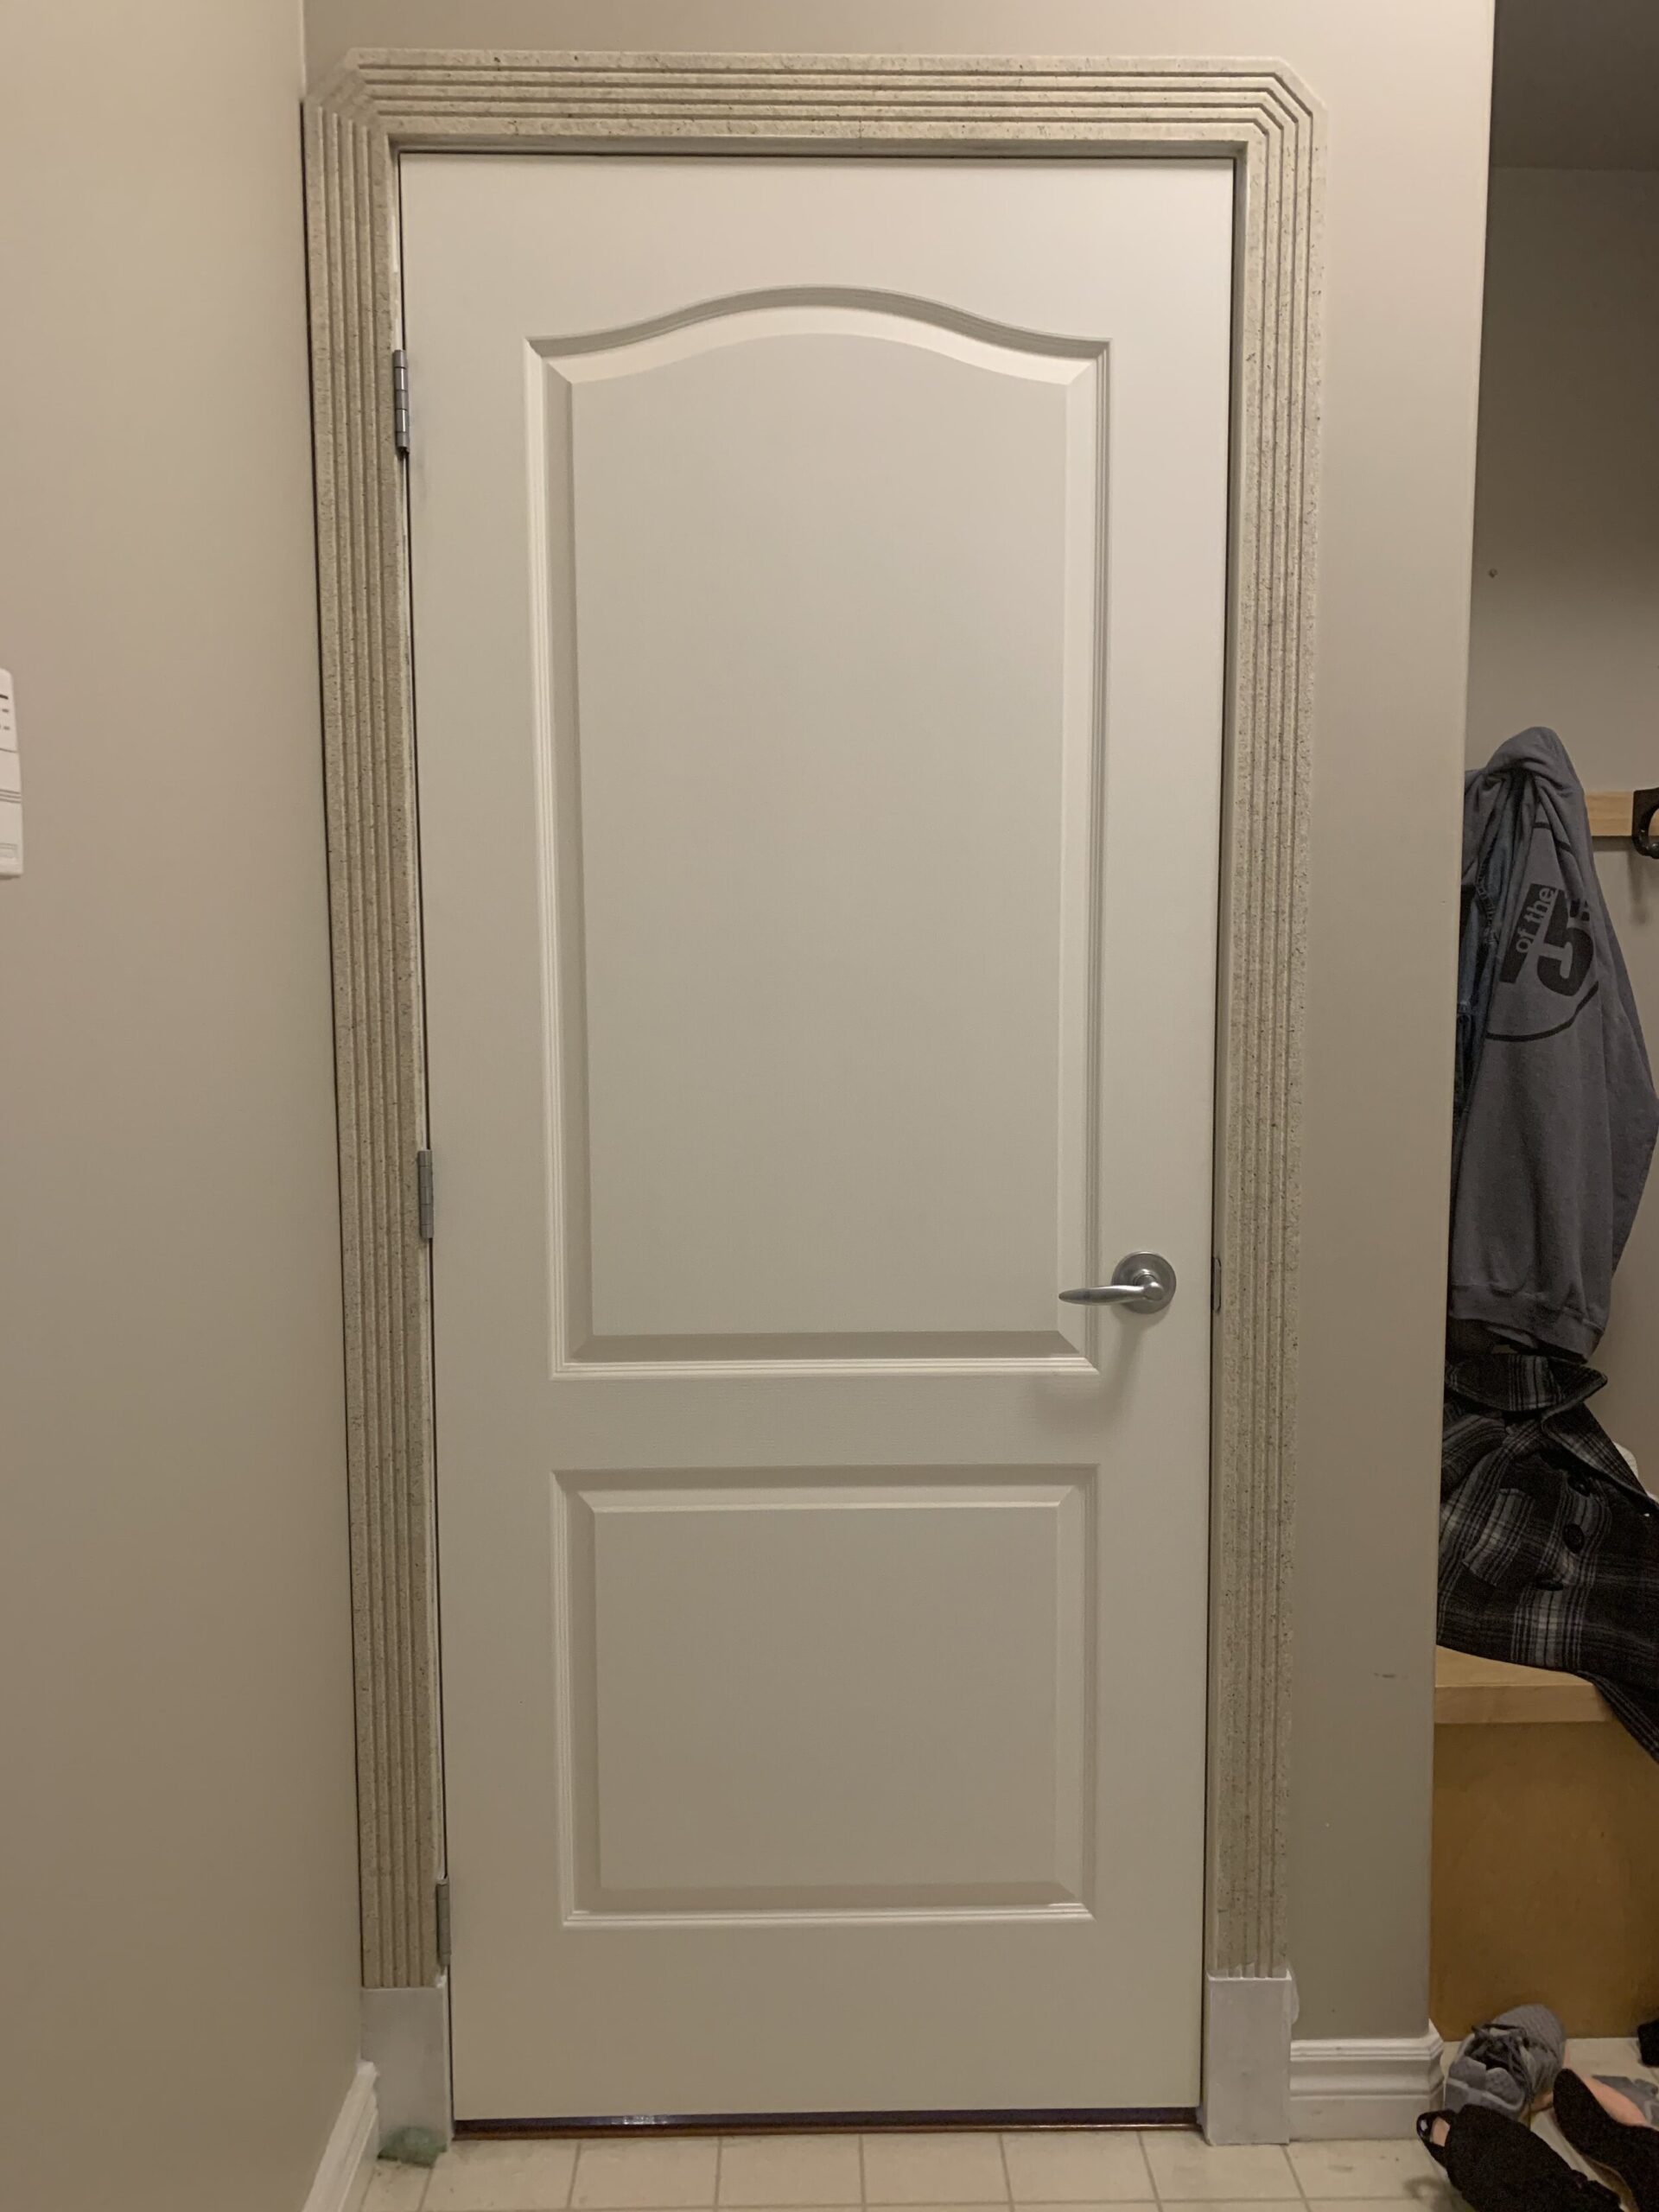 Door with speckled trim